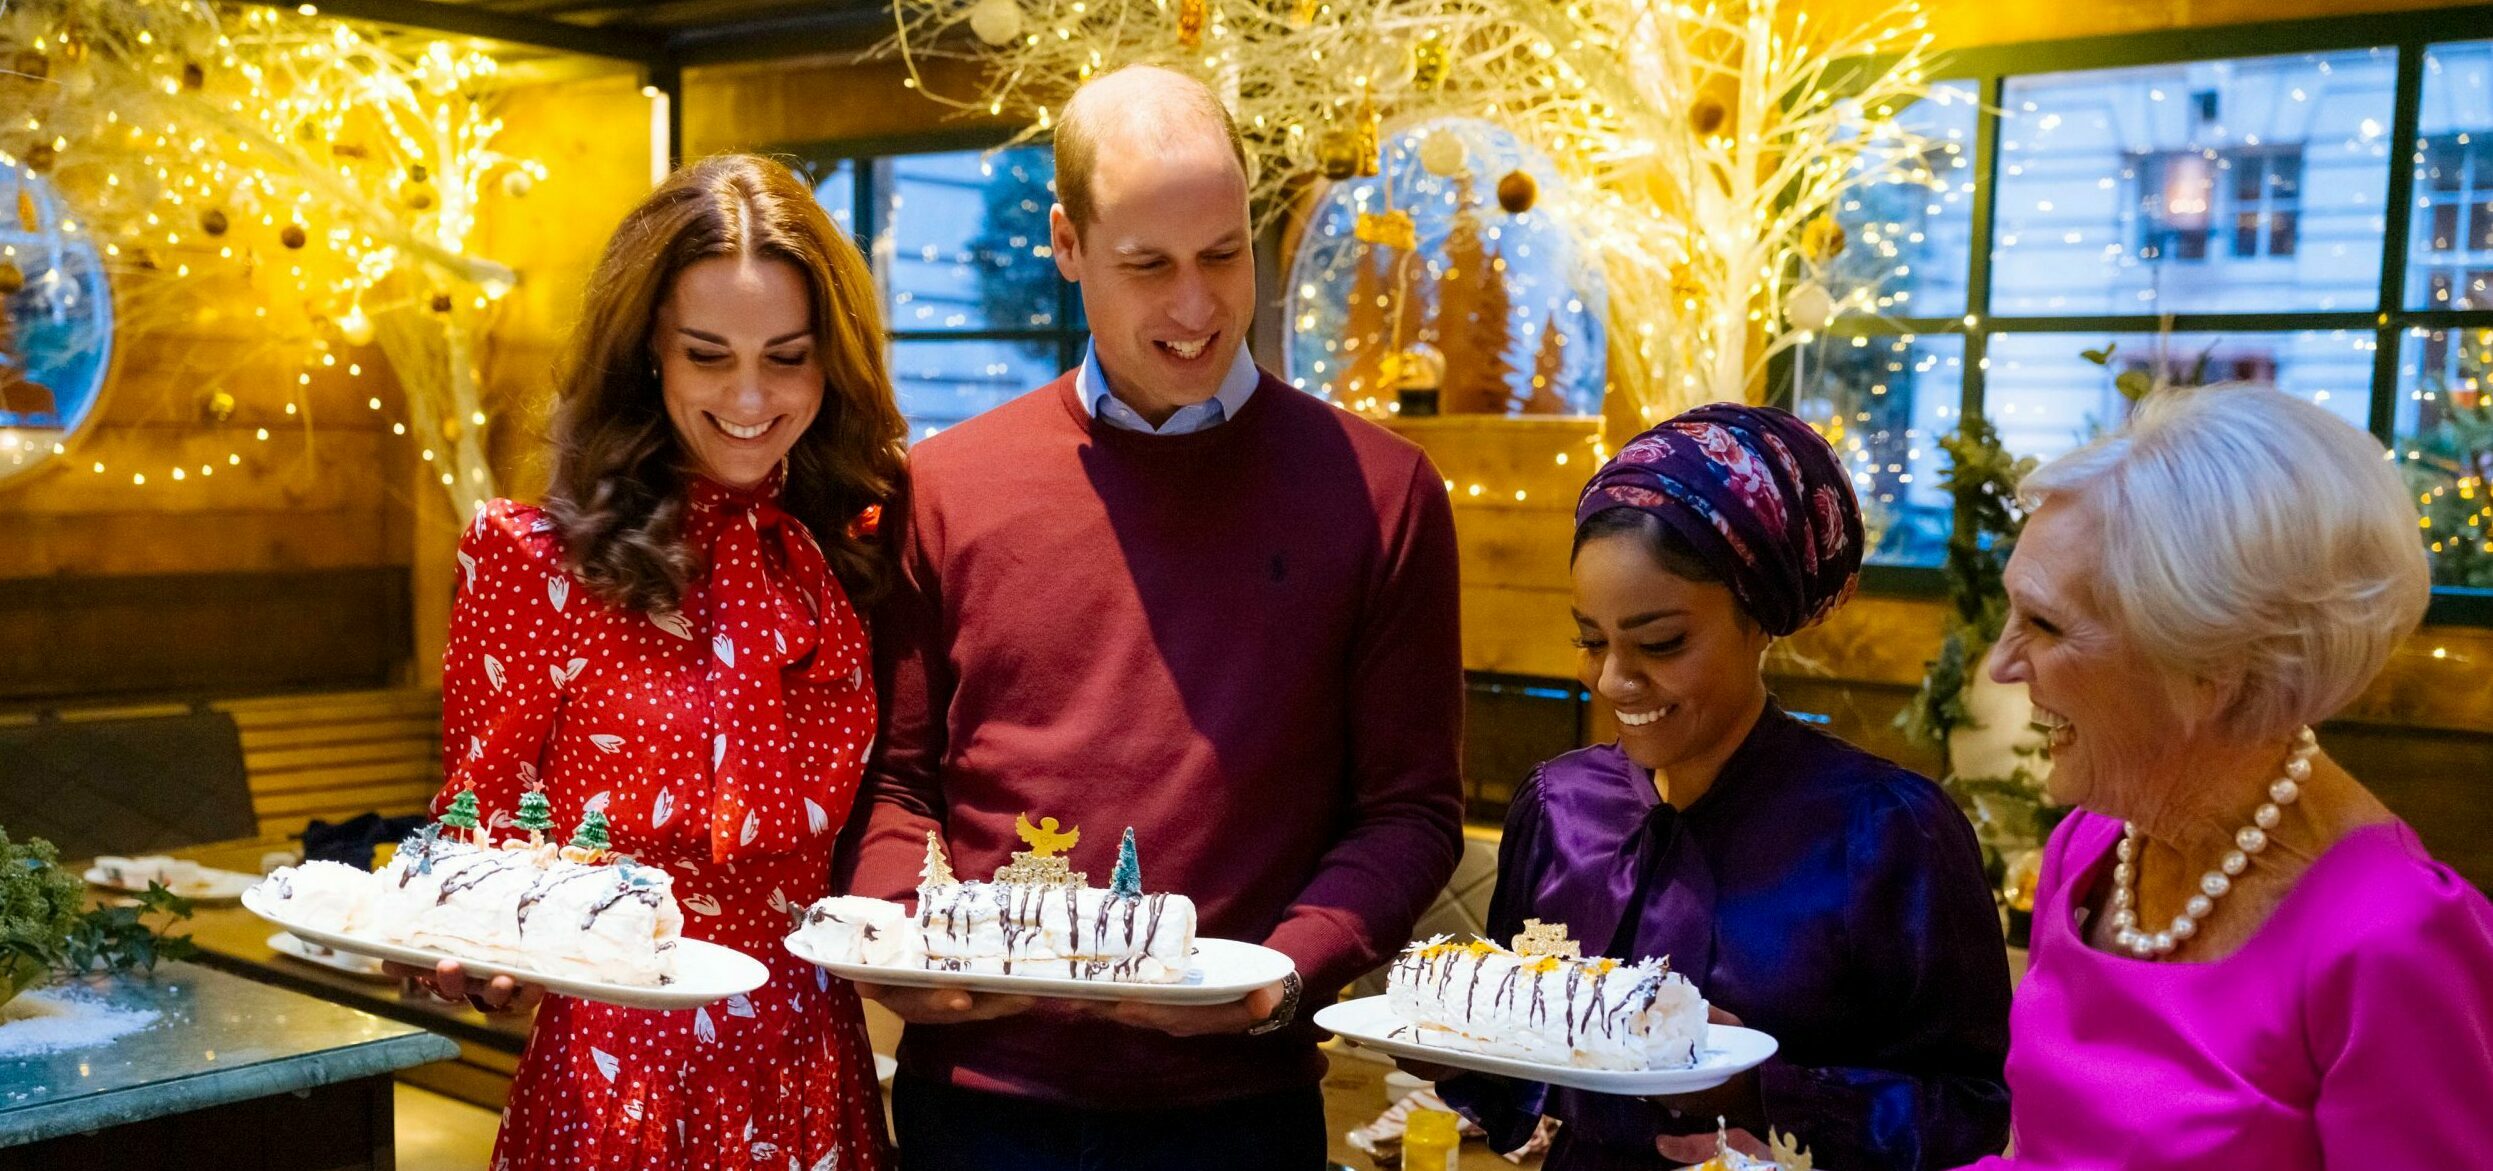 Quand Kate Middleton repousse le prince William : La vidéo embarrassante